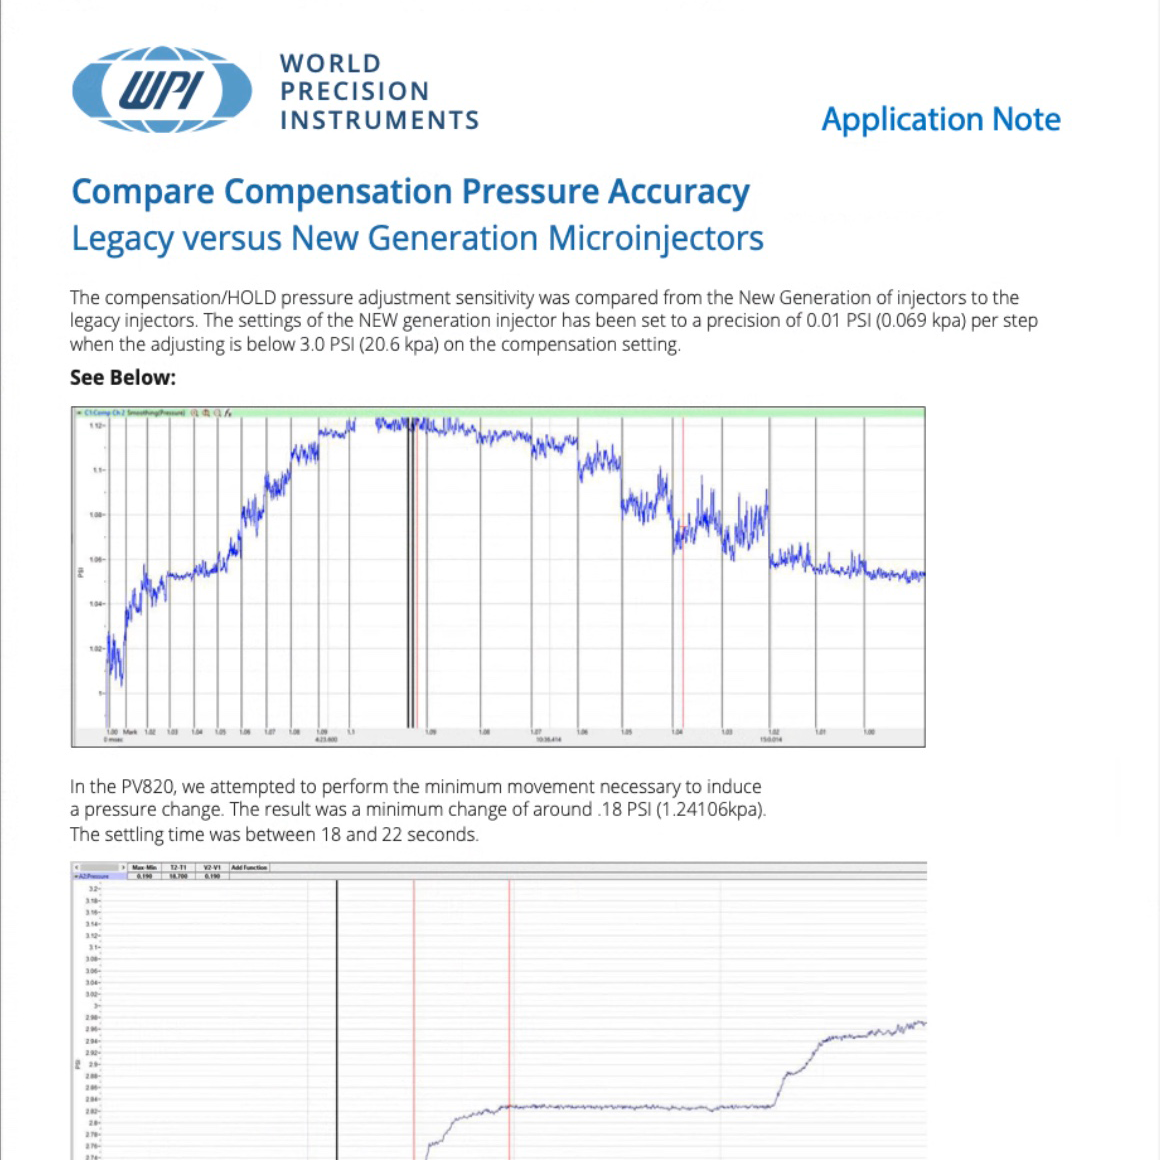 APP NOTE: Compare Compensation Pressure Accuracy